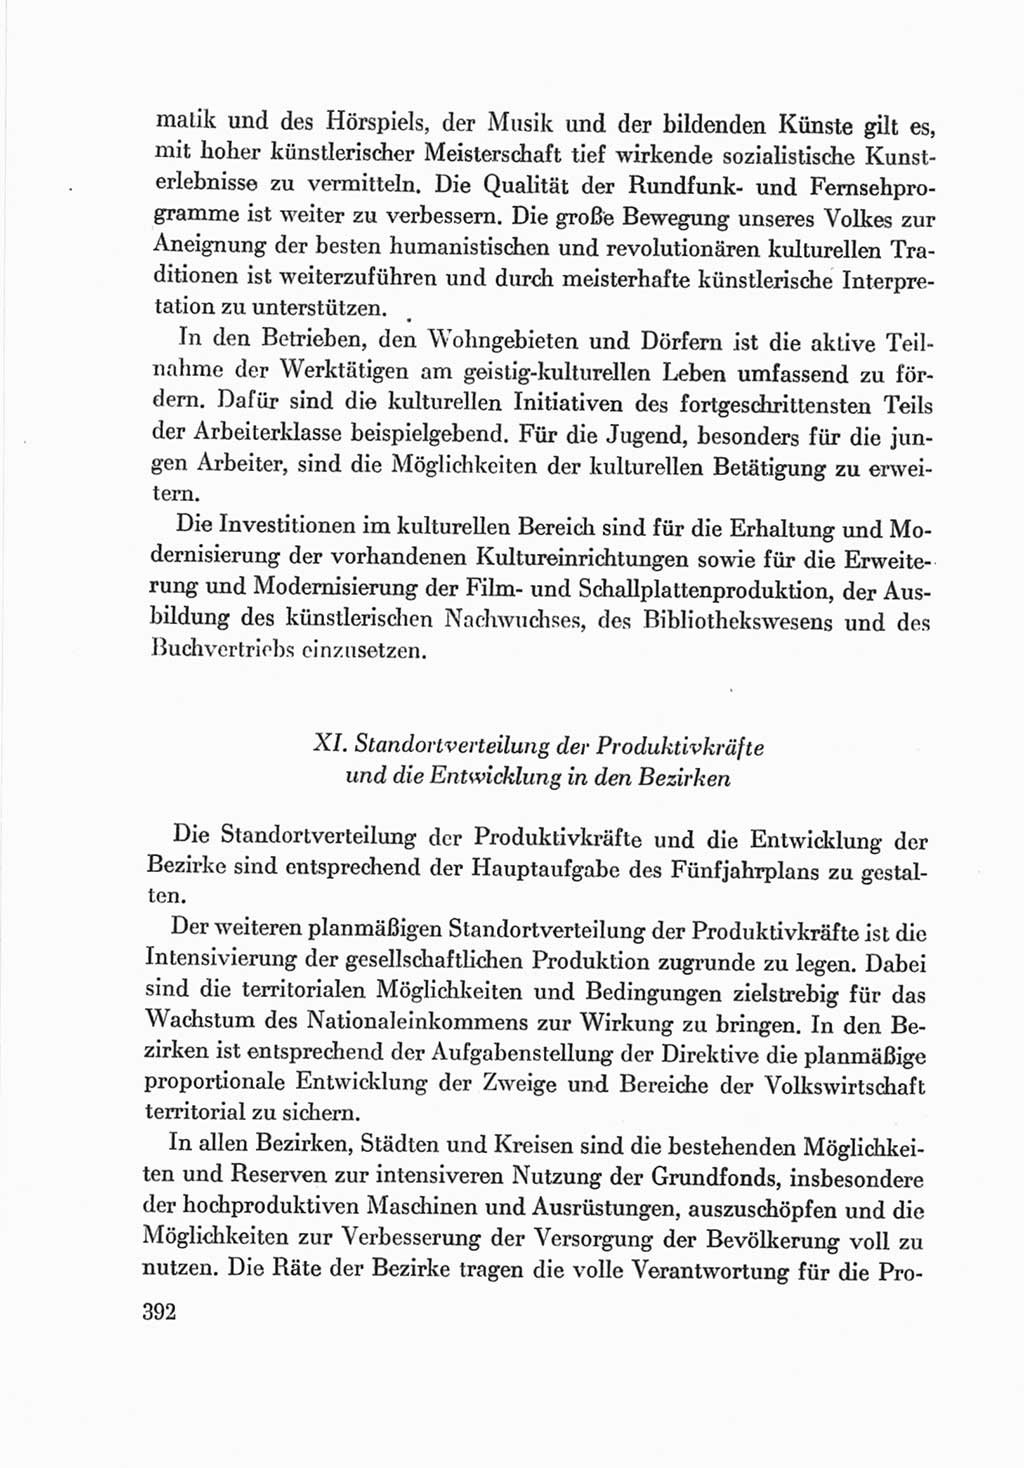 Protokoll der Verhandlungen des Ⅷ. Parteitages der Sozialistischen Einheitspartei Deutschlands (SED) [Deutsche Demokratische Republik (DDR)] 1971, Band 2, Seite 392 (Prot. Verh. Ⅷ. PT SED DDR 1971, Bd. 2, S. 392)